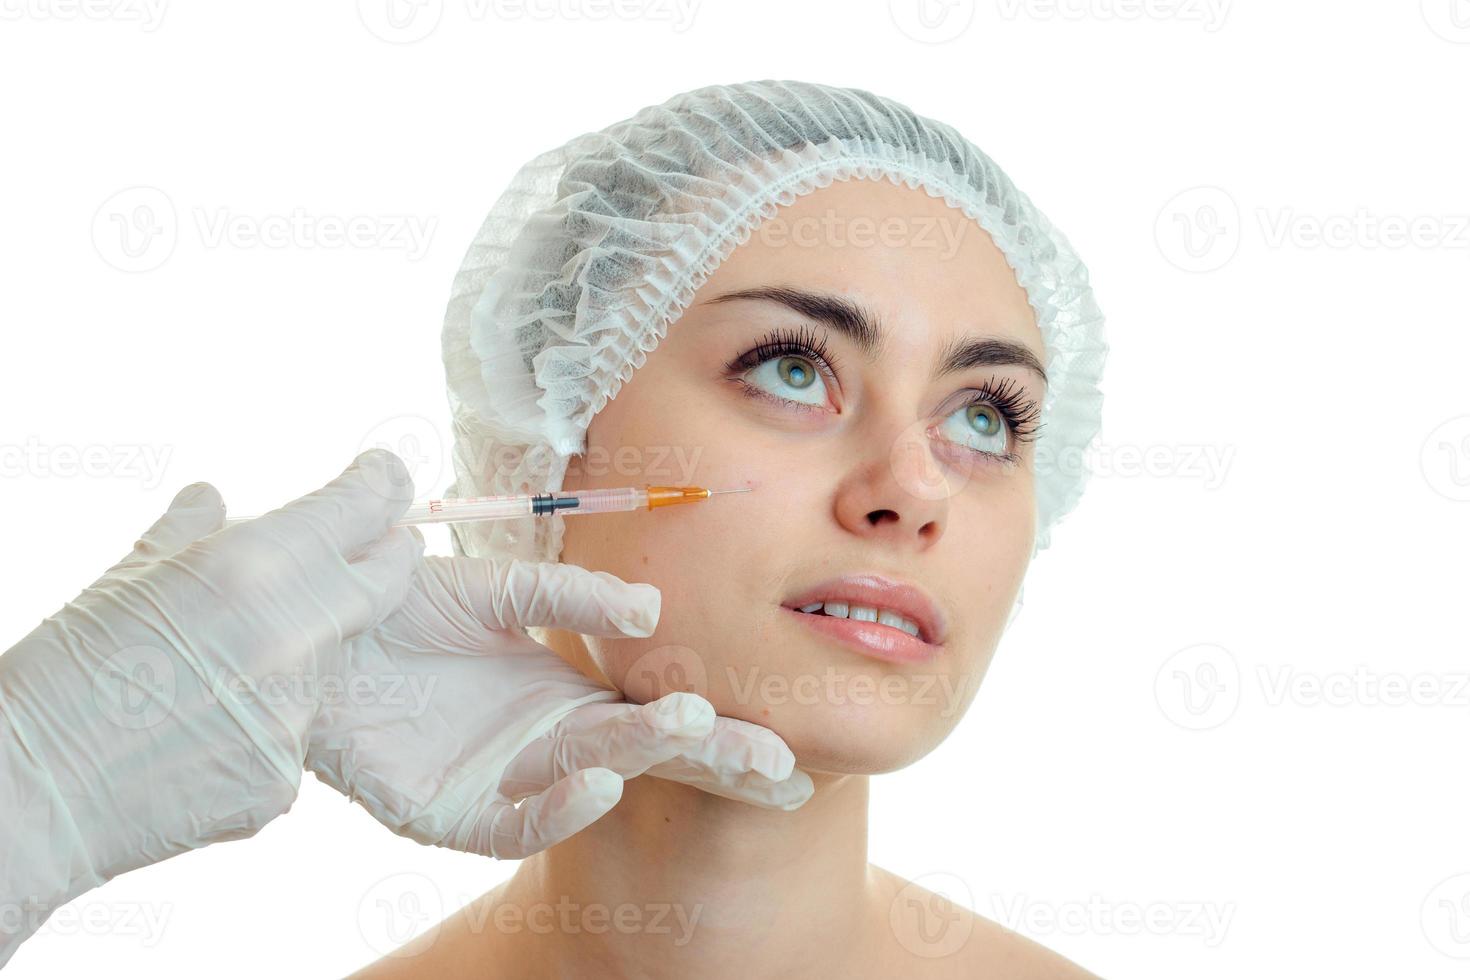 junges mädchen ohne make-up in der medizinischen kappe hob die augen und die kosmetikerin macht ihren stich ins gesicht aus der nähe foto